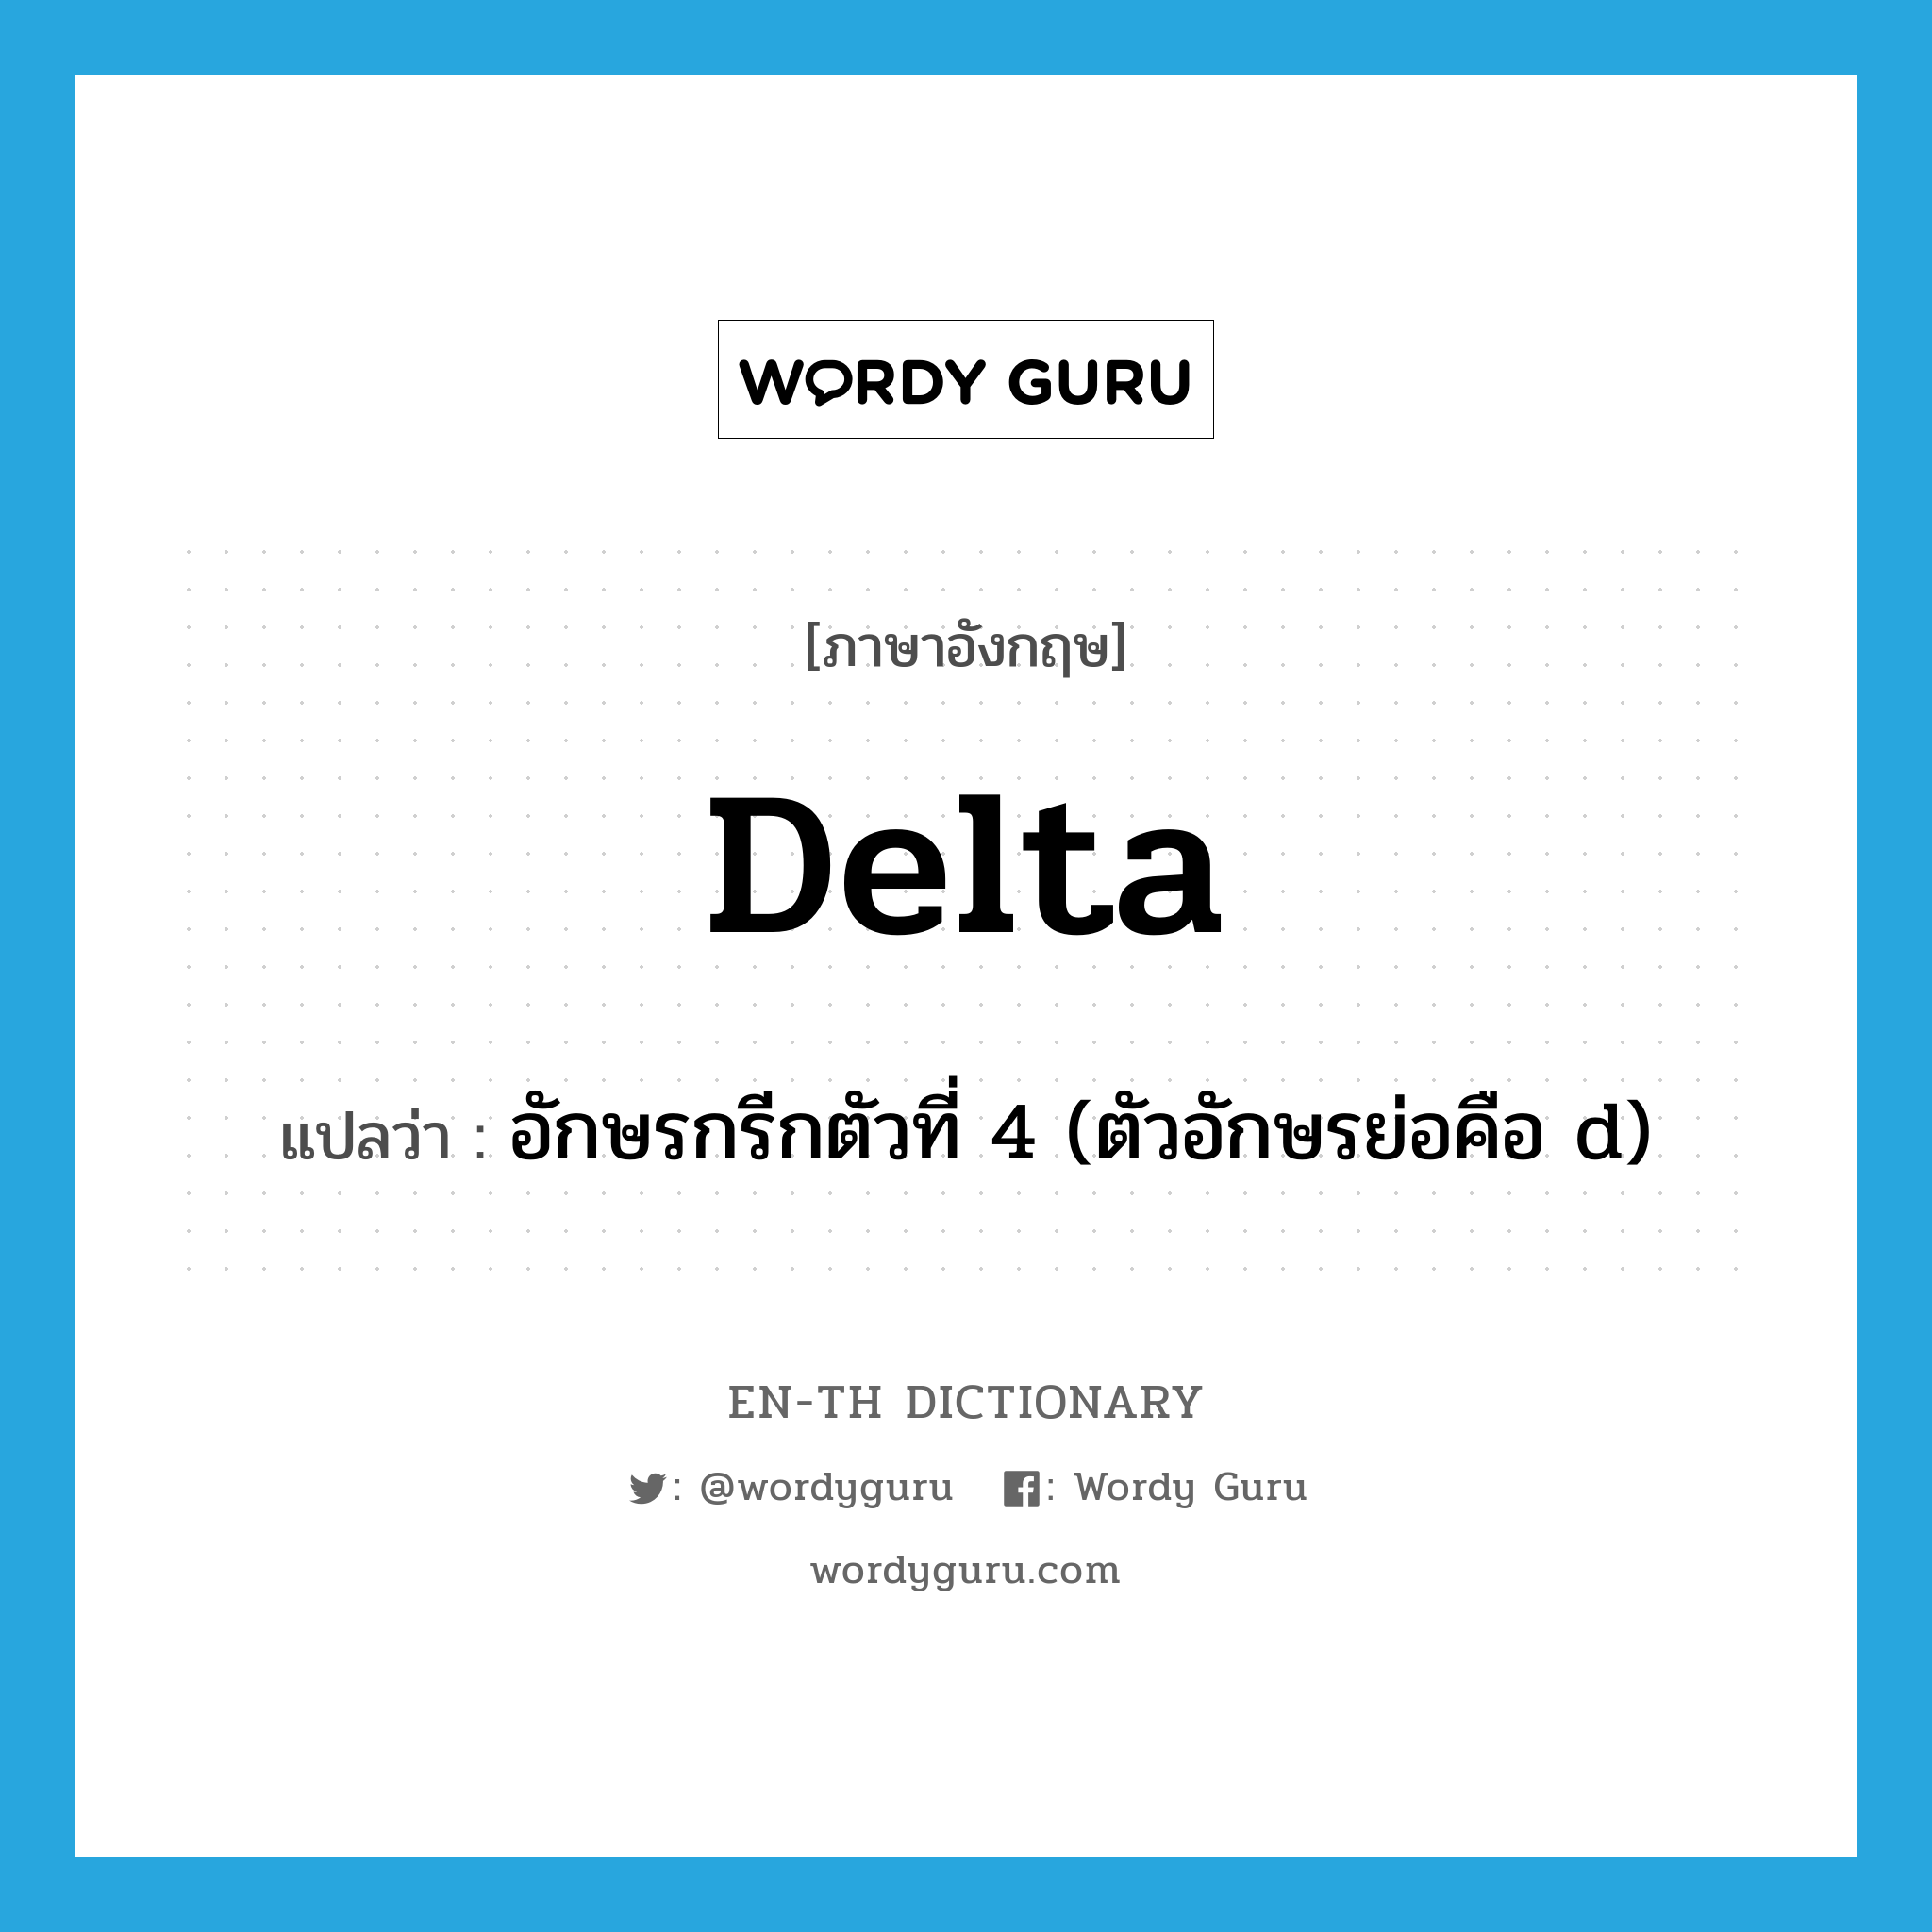 delta แปลว่า?, คำศัพท์ภาษาอังกฤษ delta แปลว่า อักษรกรีกตัวที่ 4 (ตัวอักษรย่อคือ d) ประเภท N หมวด N